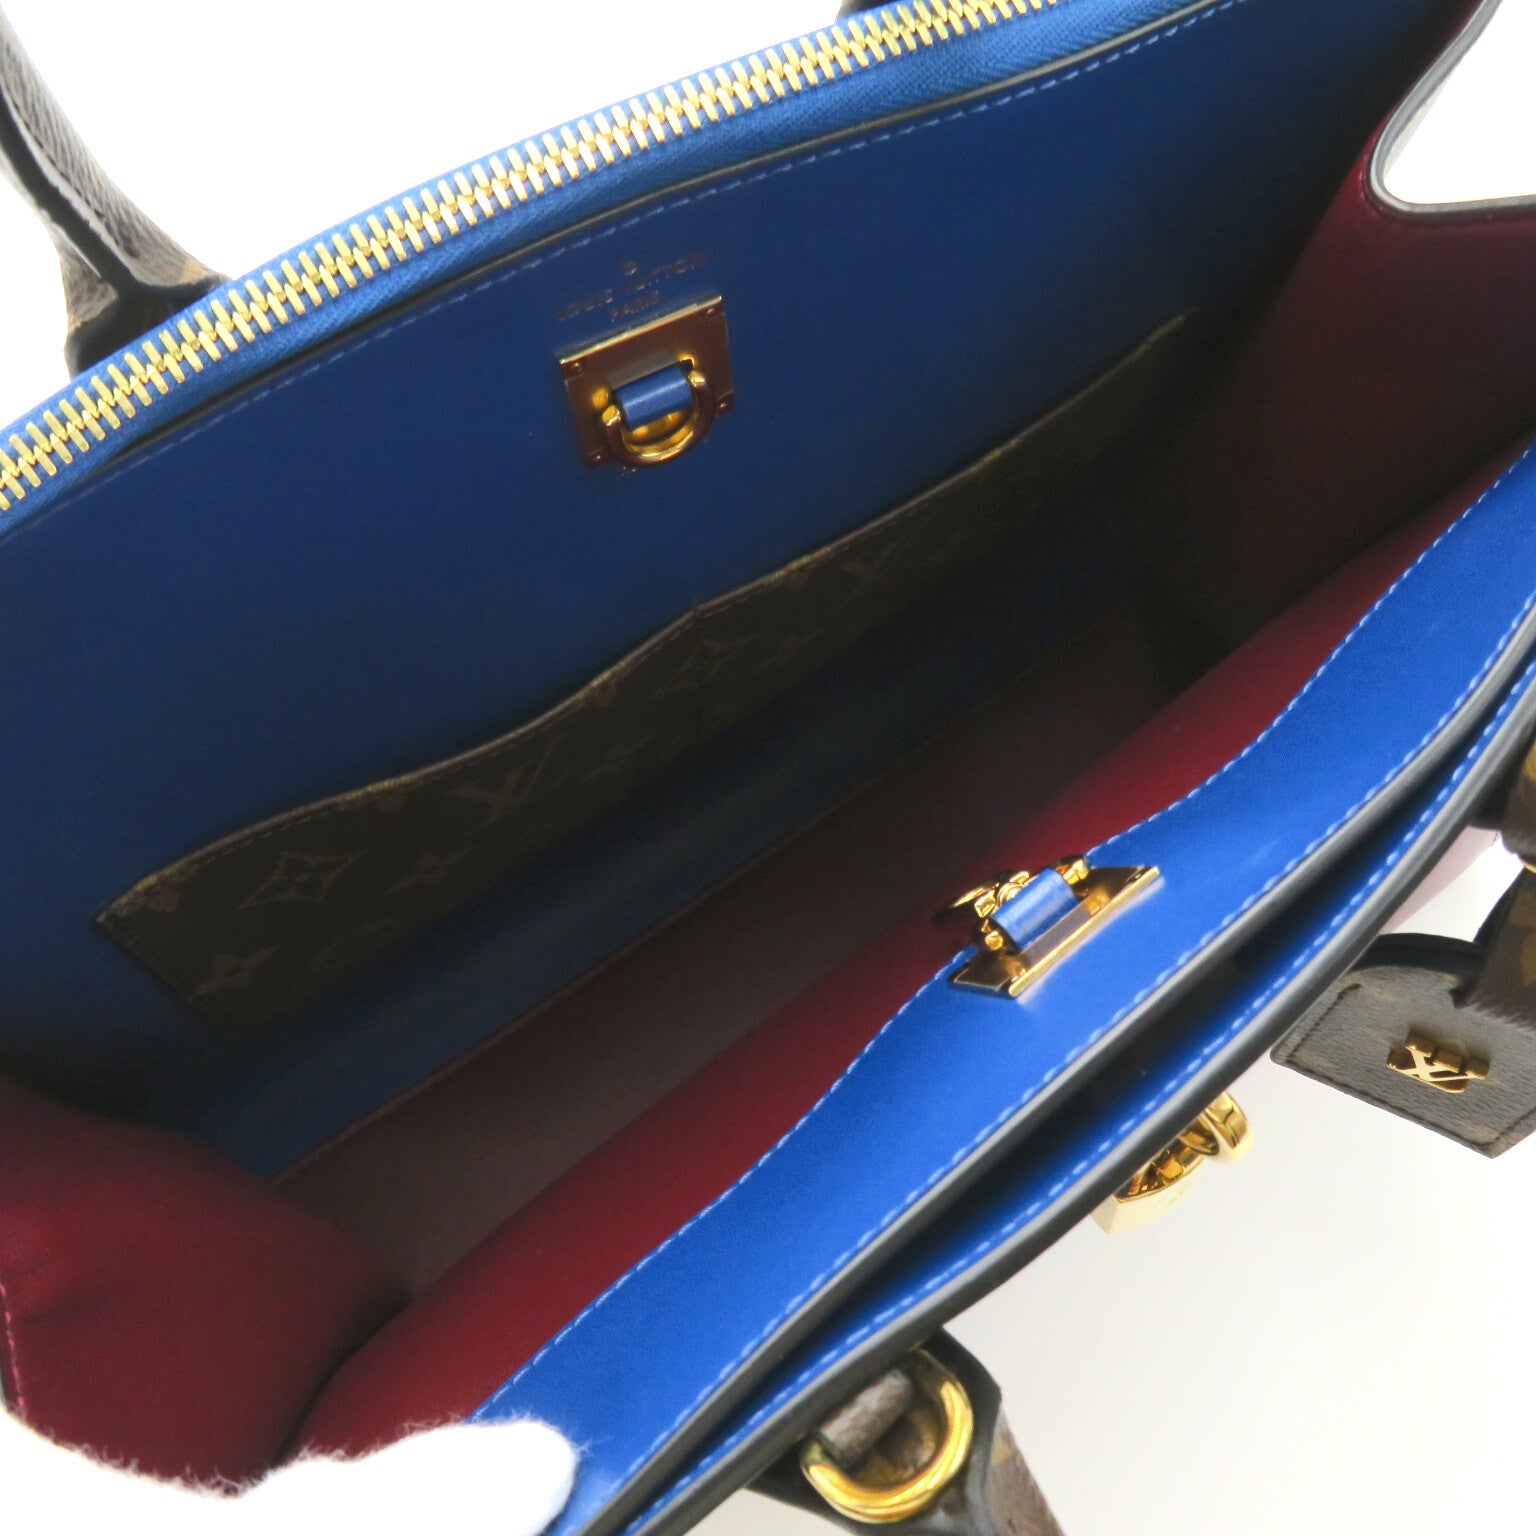 Louis Vuitton Louis Vuitton City Timer MM Shoulder Bag PVC Coated Canvas Leather  Brown / Multicolor / Blue/Red/White M52740